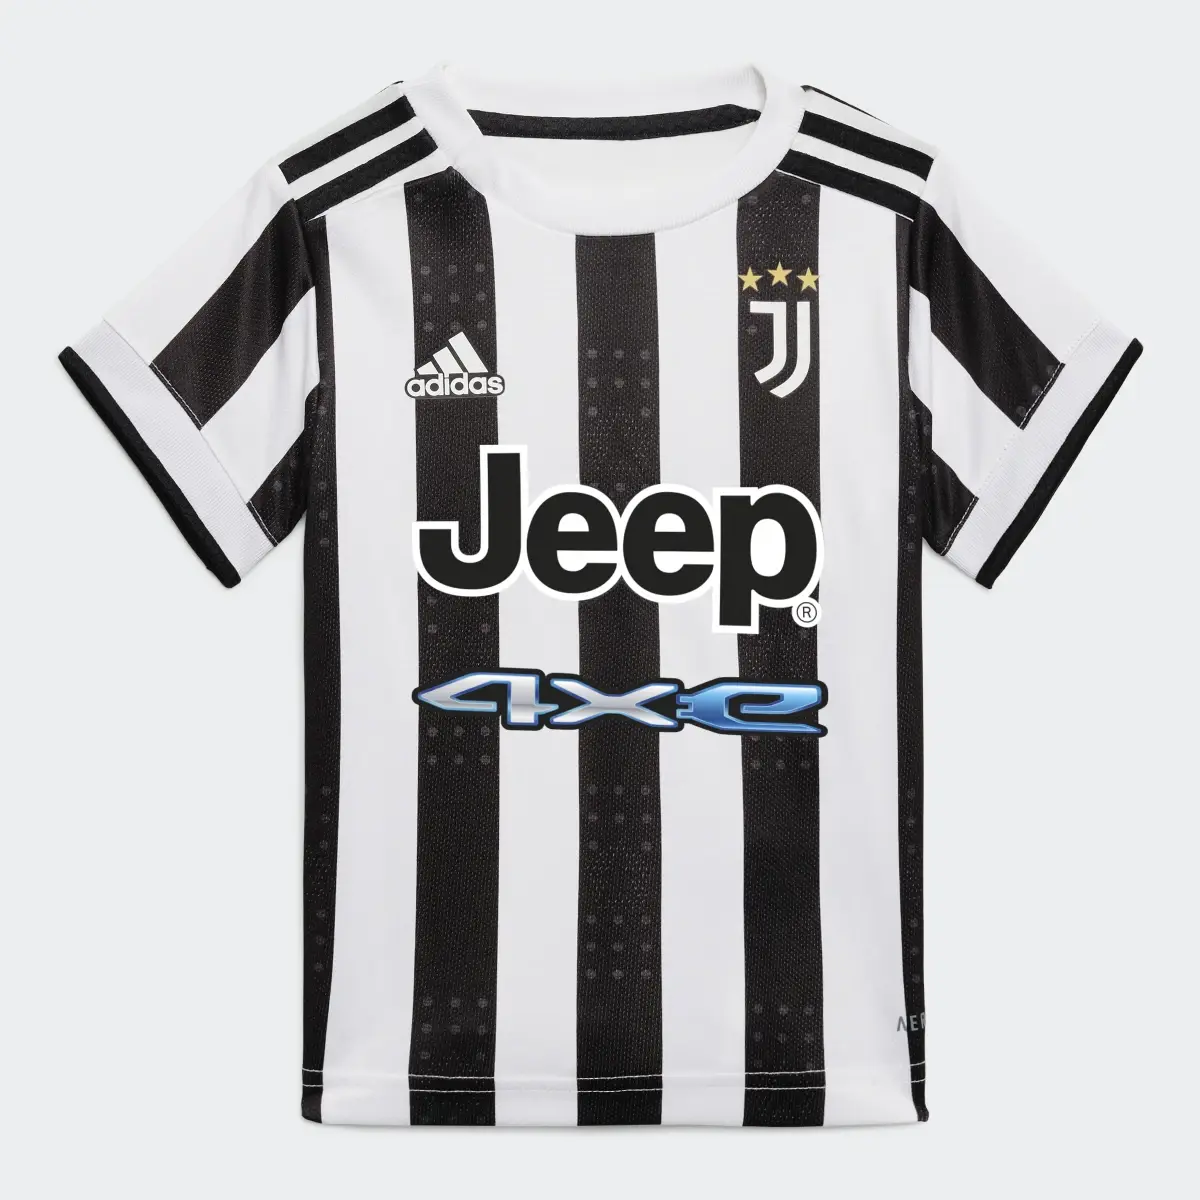 Adidas Juventus 21/22 Home Baby Kit. 3